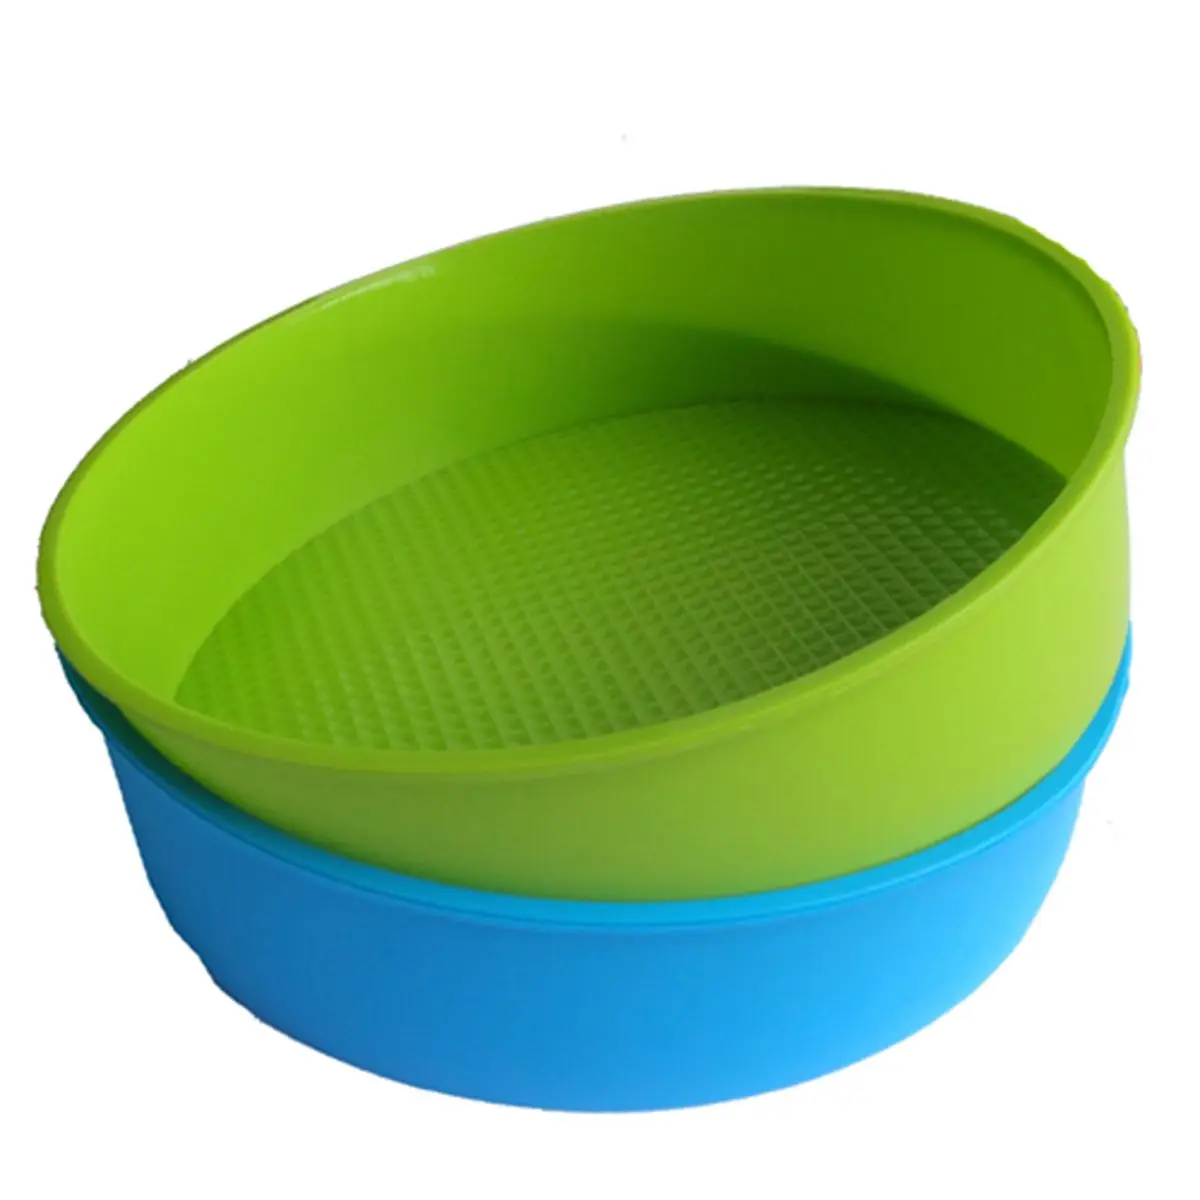 Силиконовая форма для выпечки круглой формы для торта диаметром 26 см / 10 дюймов, форма для выпечки синего и зеленого цветов выбирается случайным образом